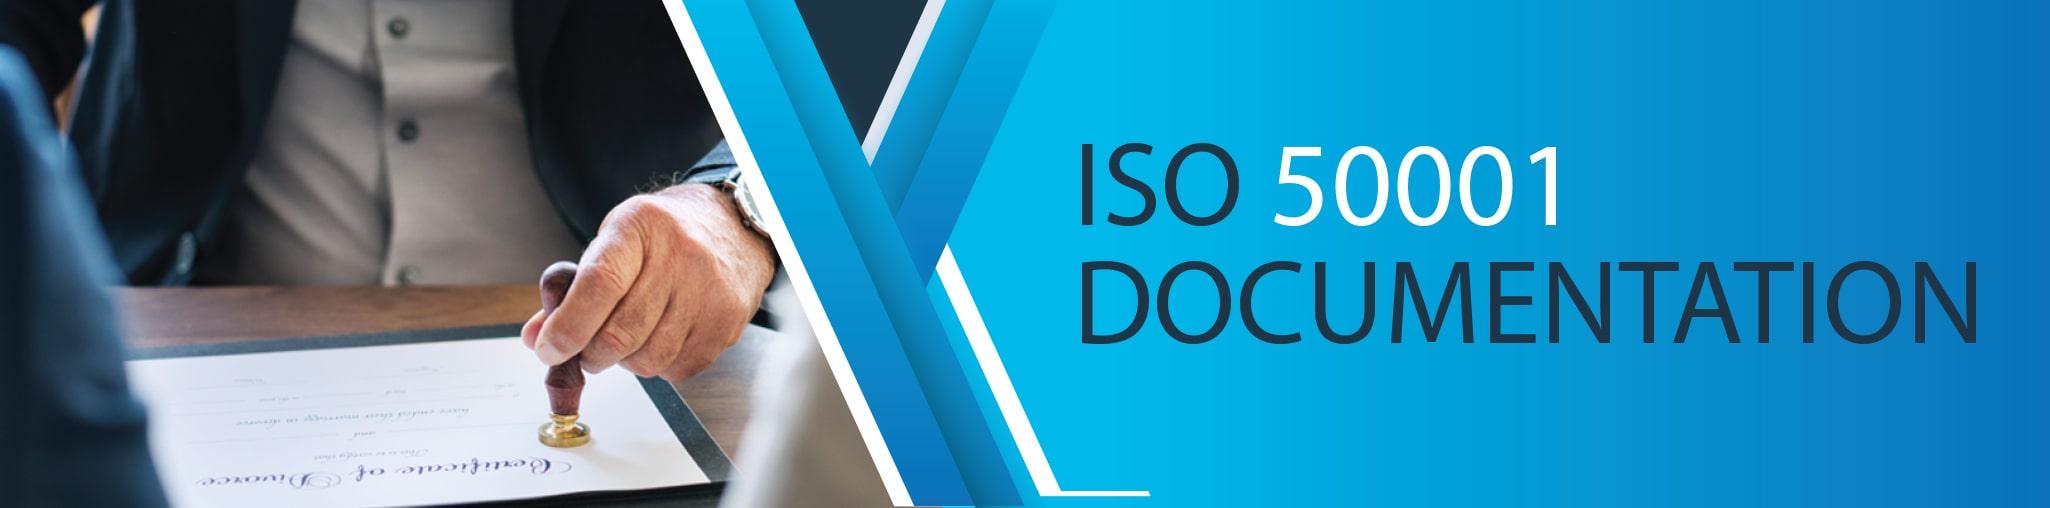 ISO 50001 Documentation